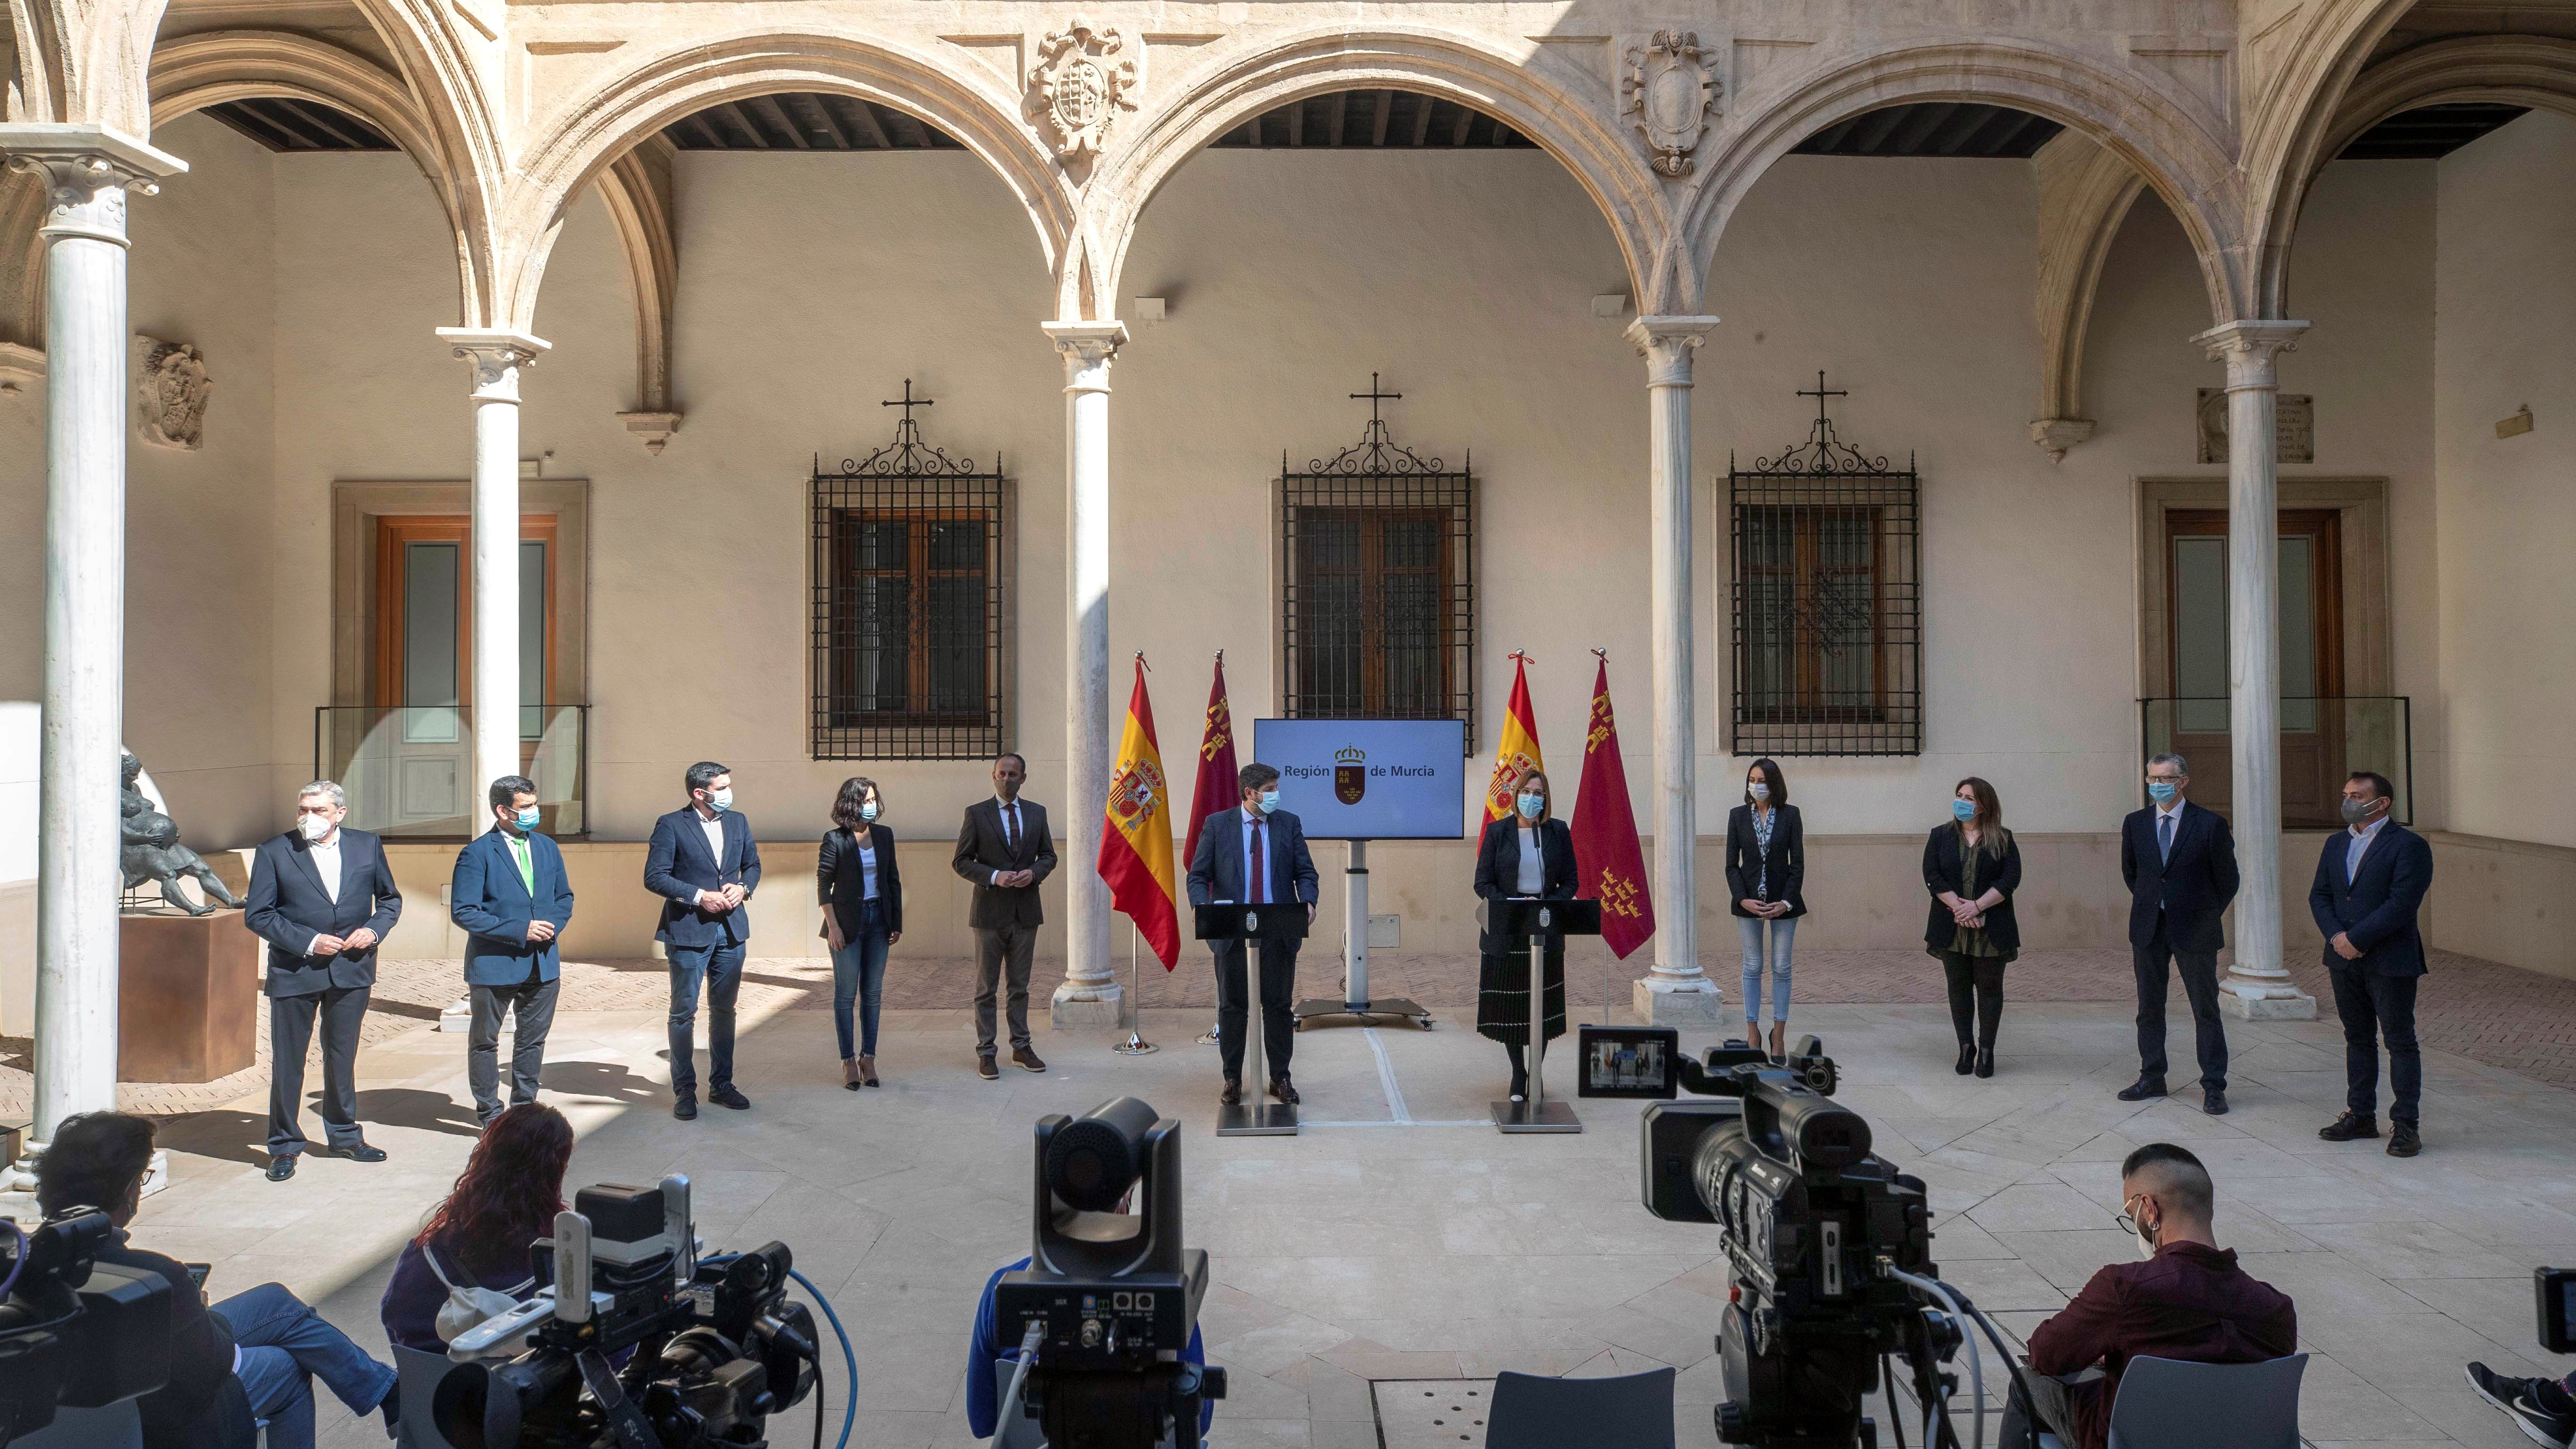 Toman posesión de sus cargos como consejeros del Gobierno de Murcia los tres diputados de Cs